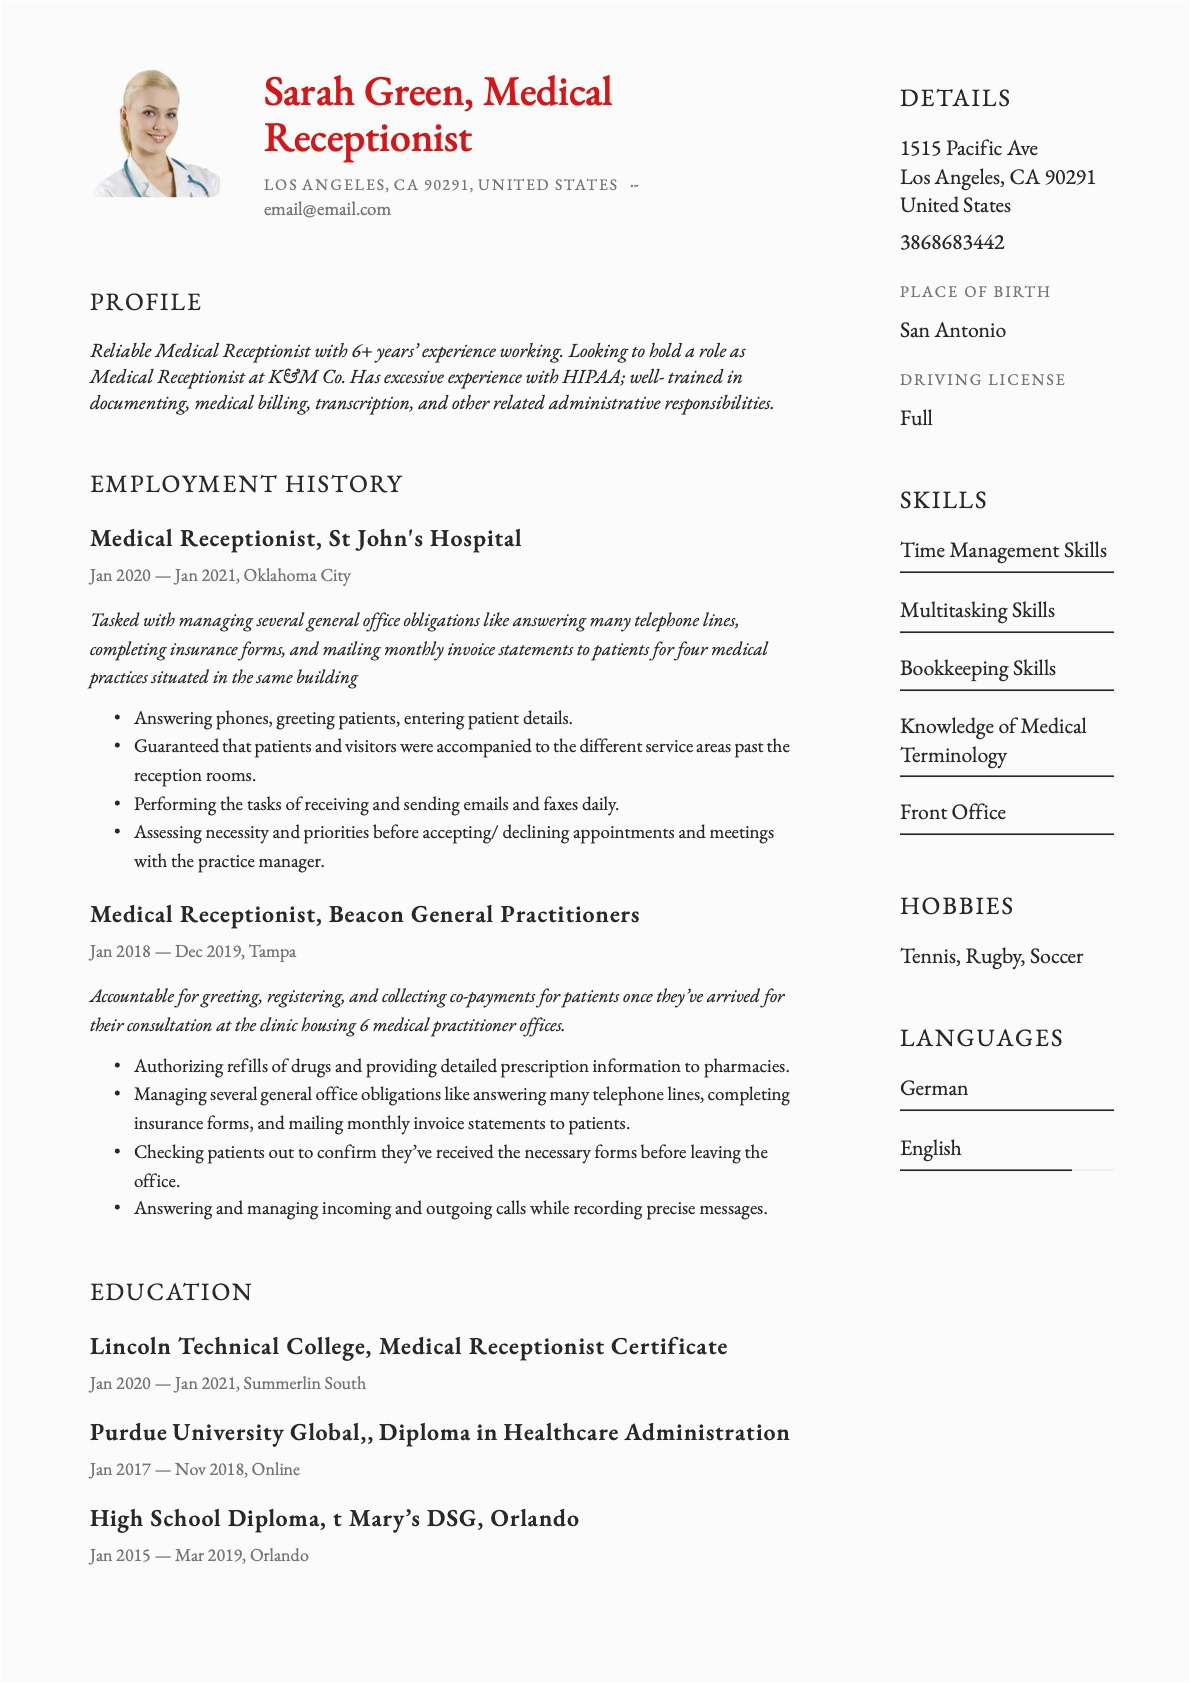 Sample Resume for Medical Receptionist Position Medical Receptionist Resume & Guide